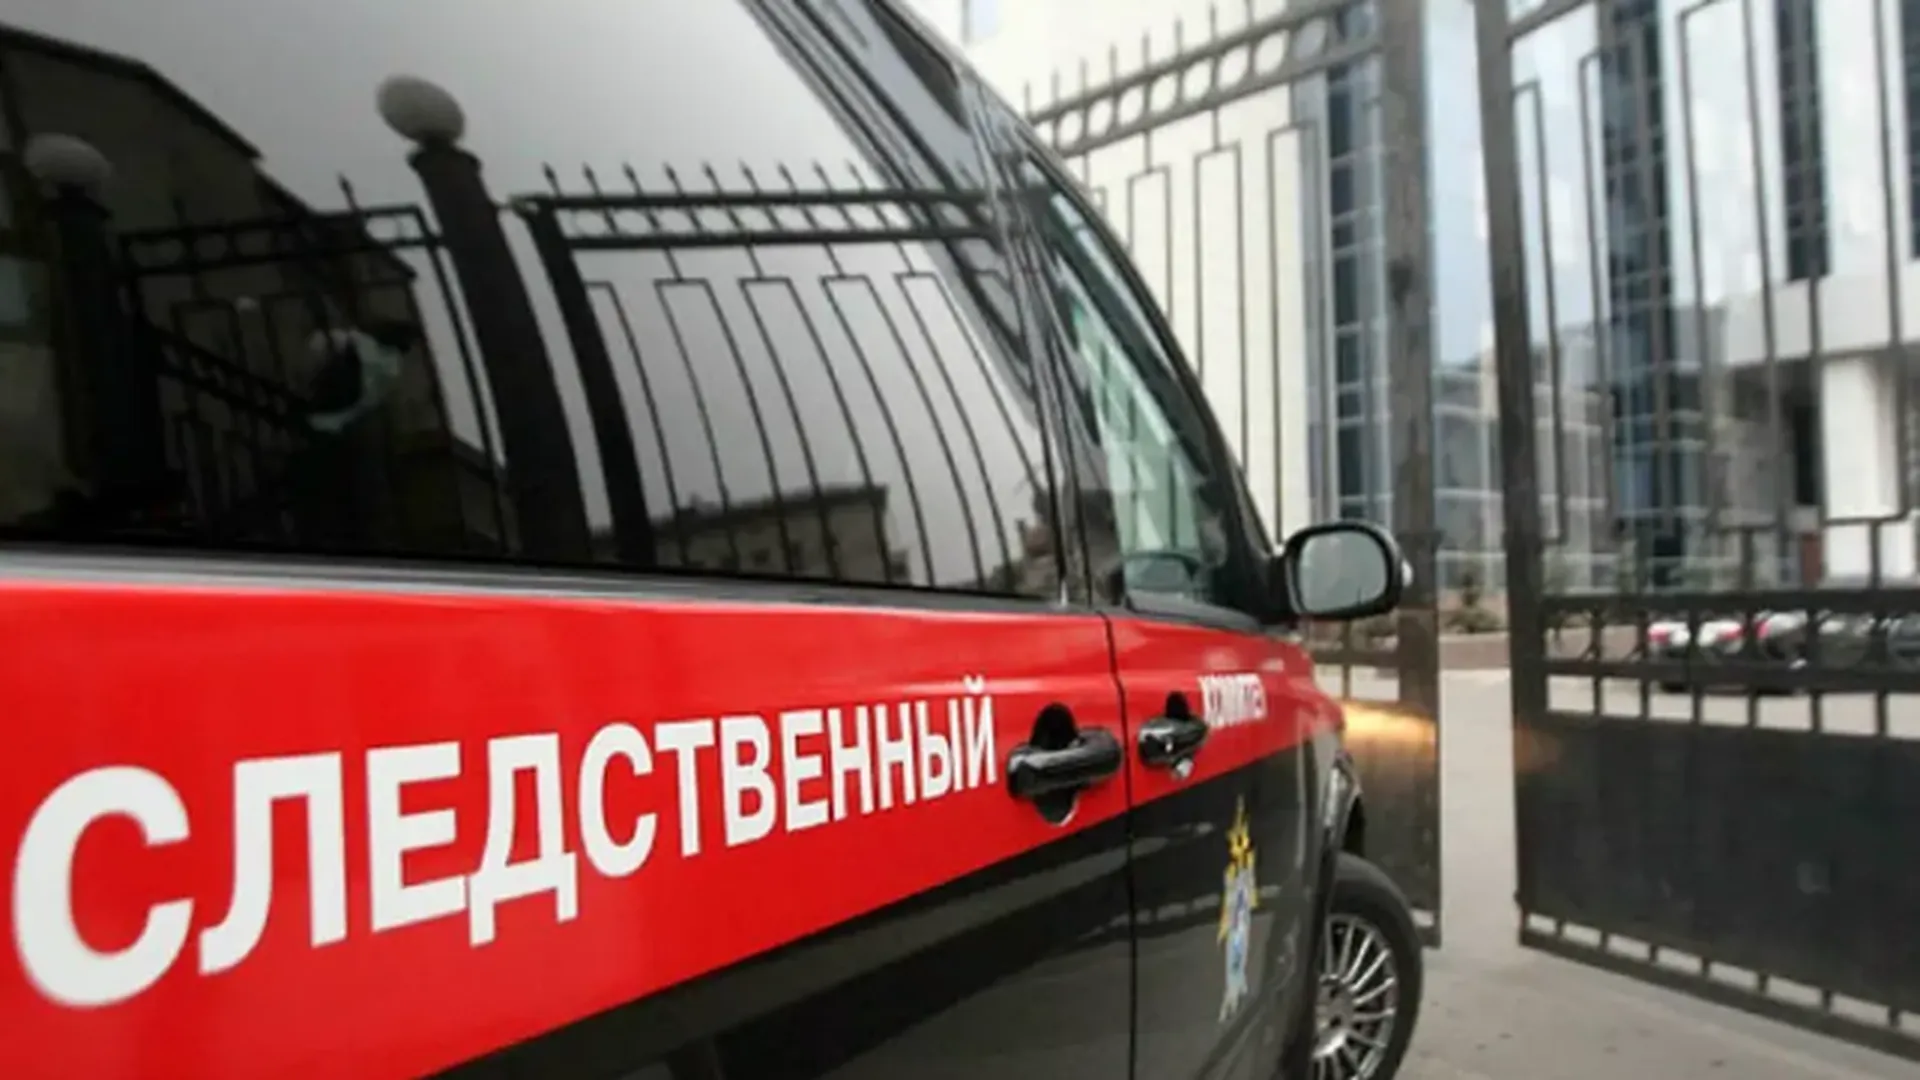 Ветерана спецоперации избили до смерти в Пермском крае